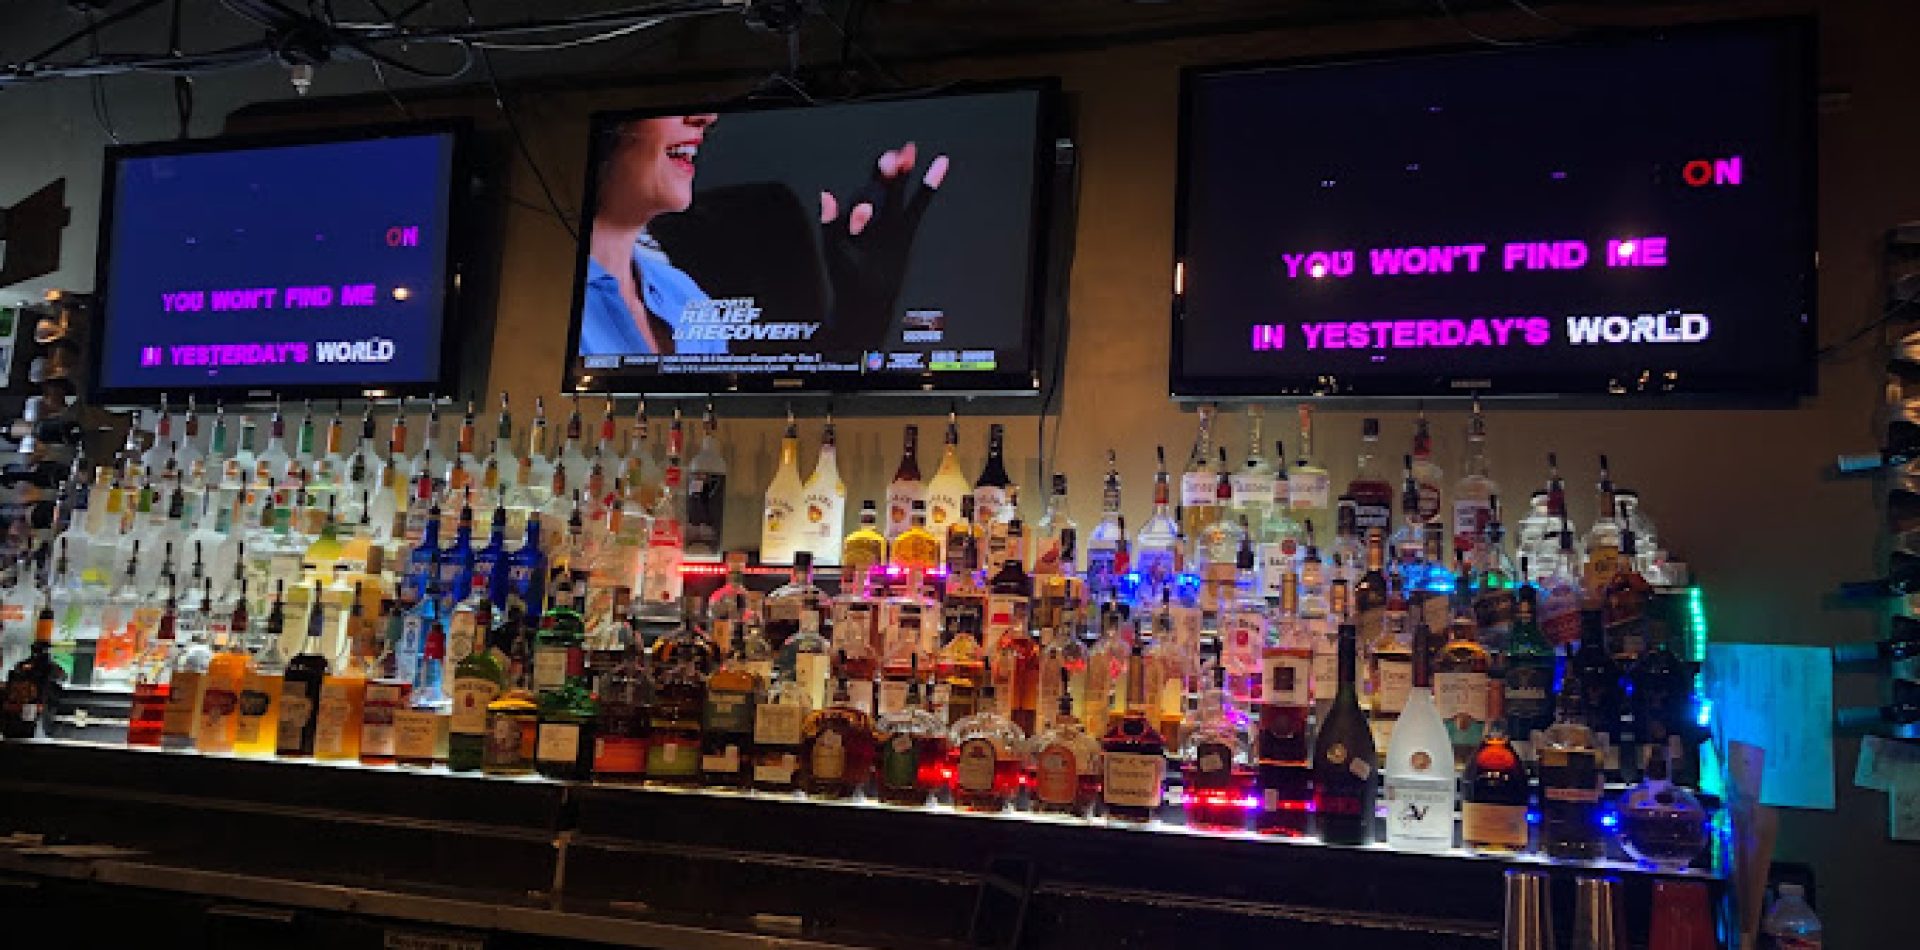 The Best Karaoke Bars in Houston